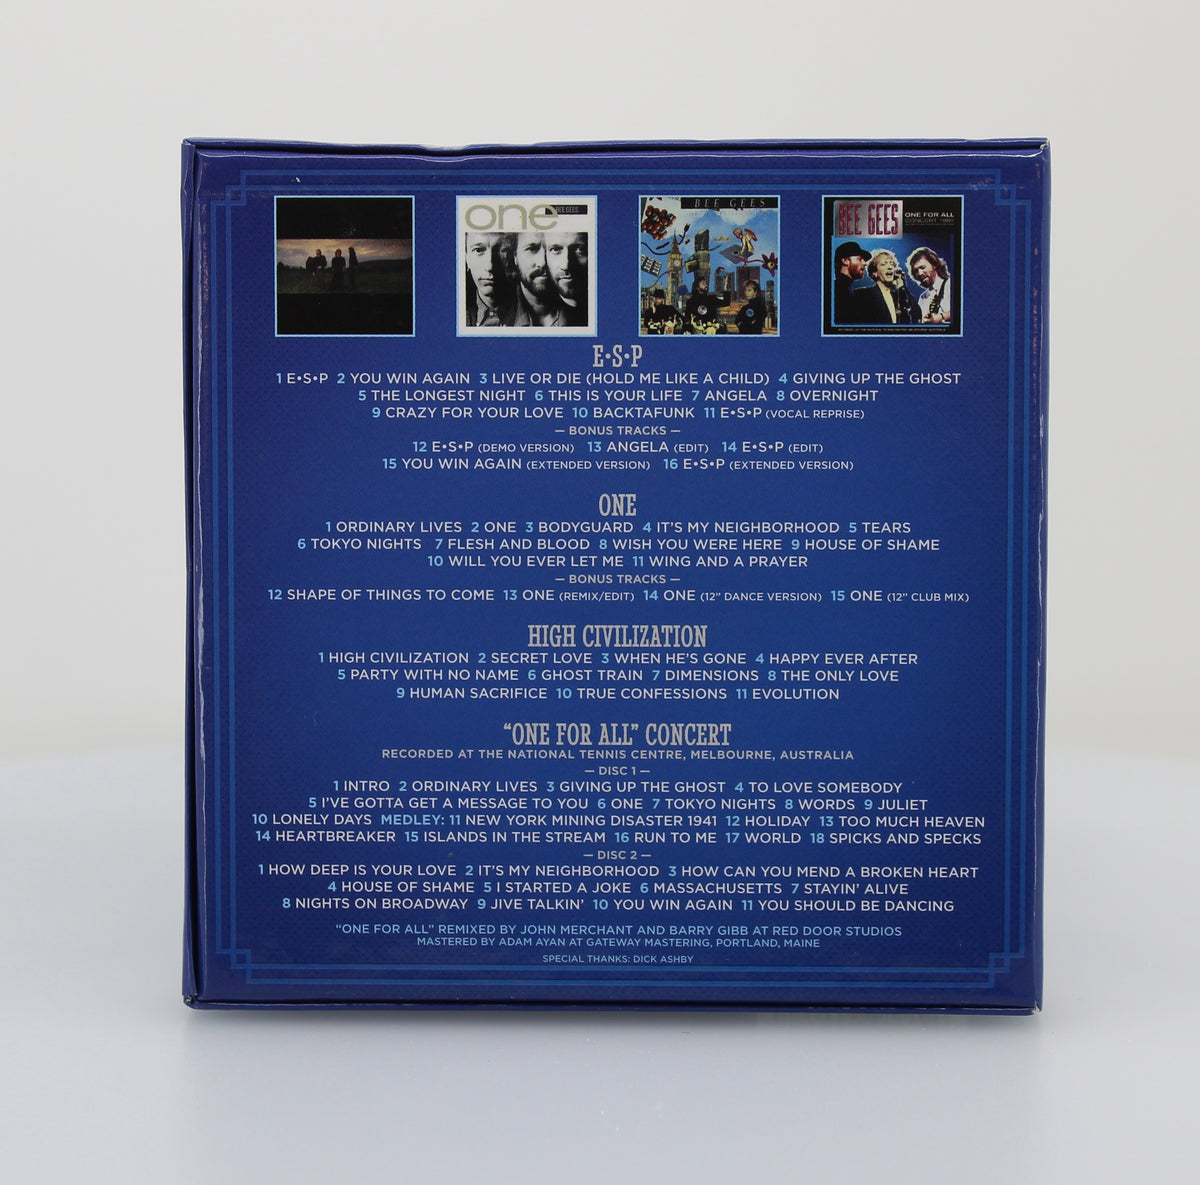 Bee Gees - The Warner Bros. Years 1987-1991, 5 CD Box, Europe 2014